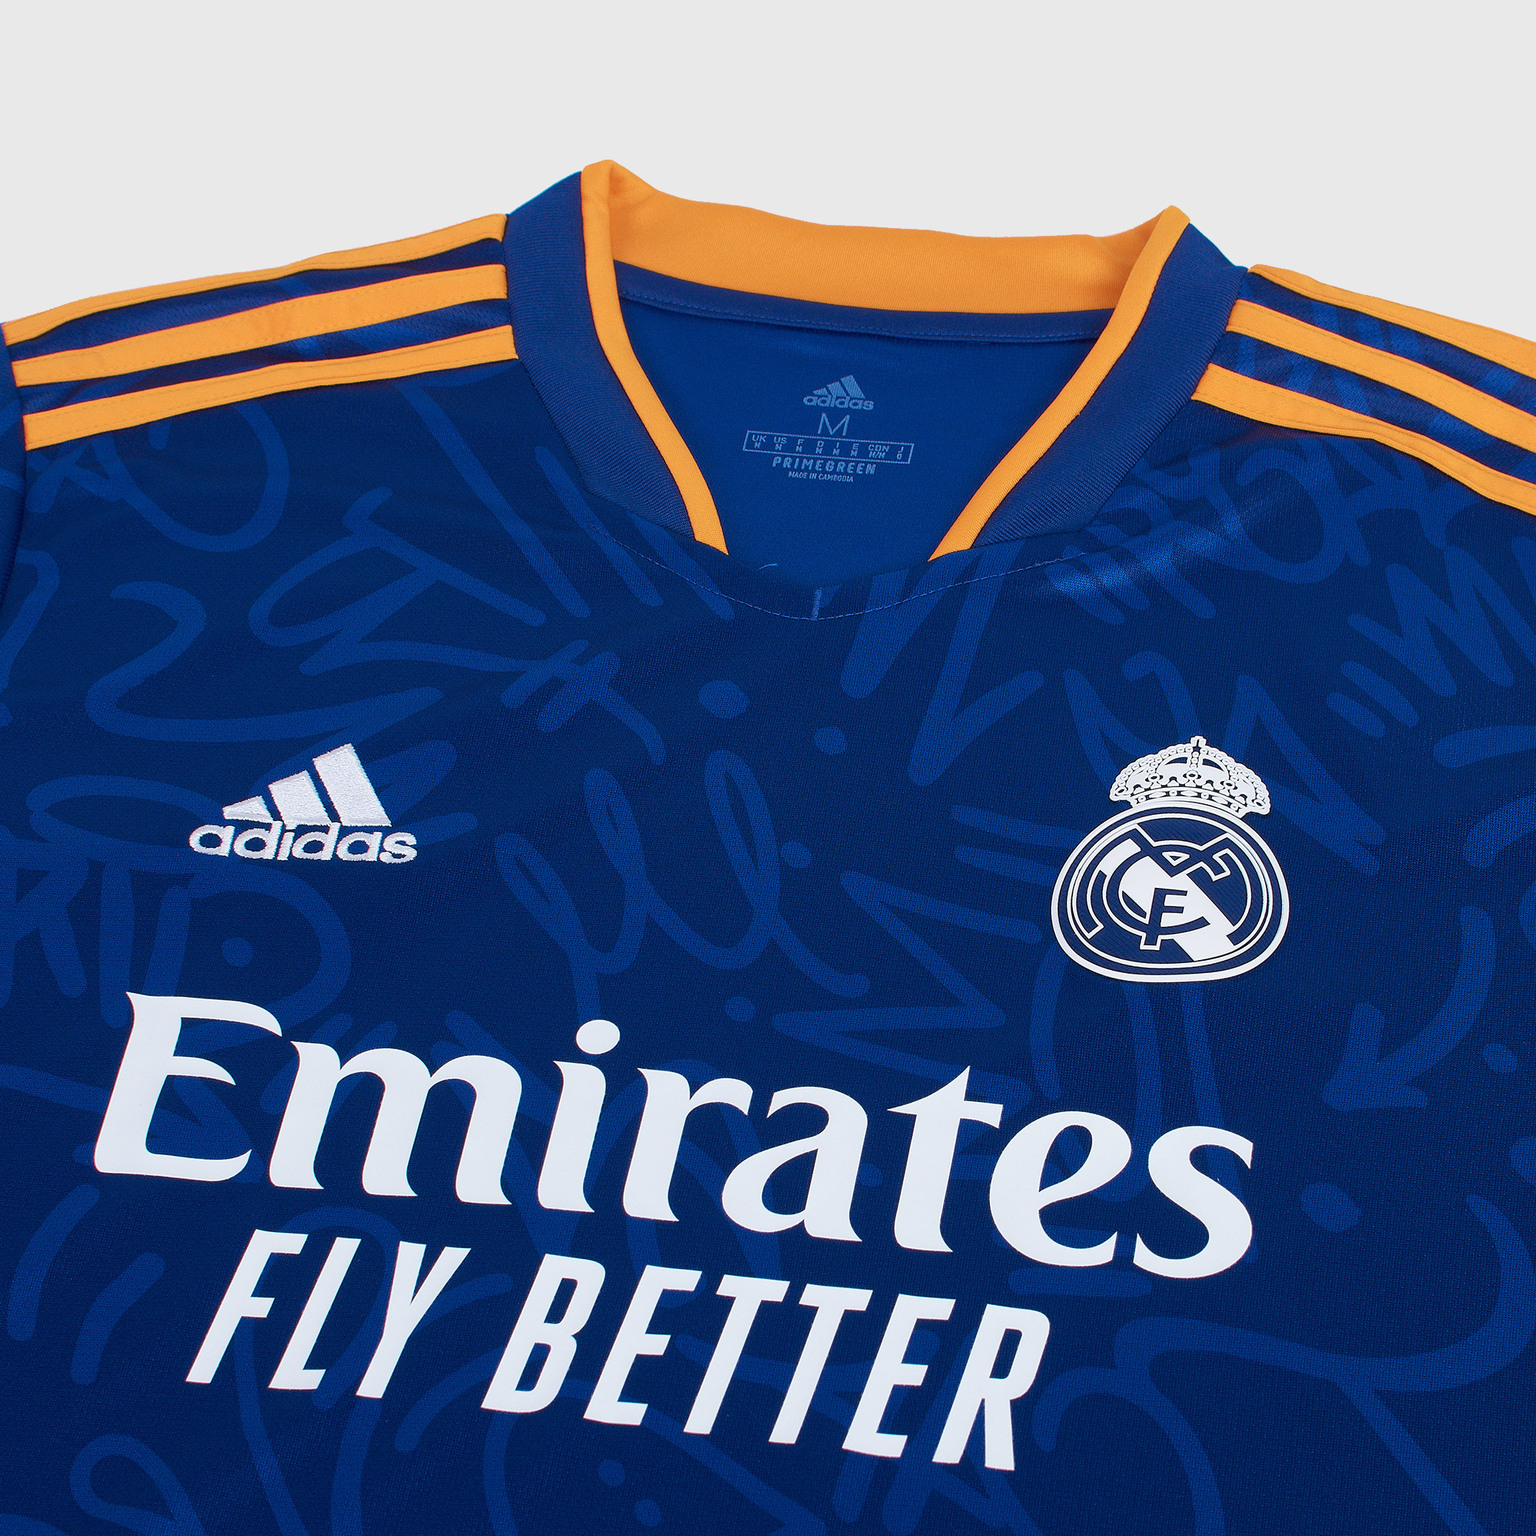 Футболка игровая выездная Adidas Real Madrid сезон 2021/22